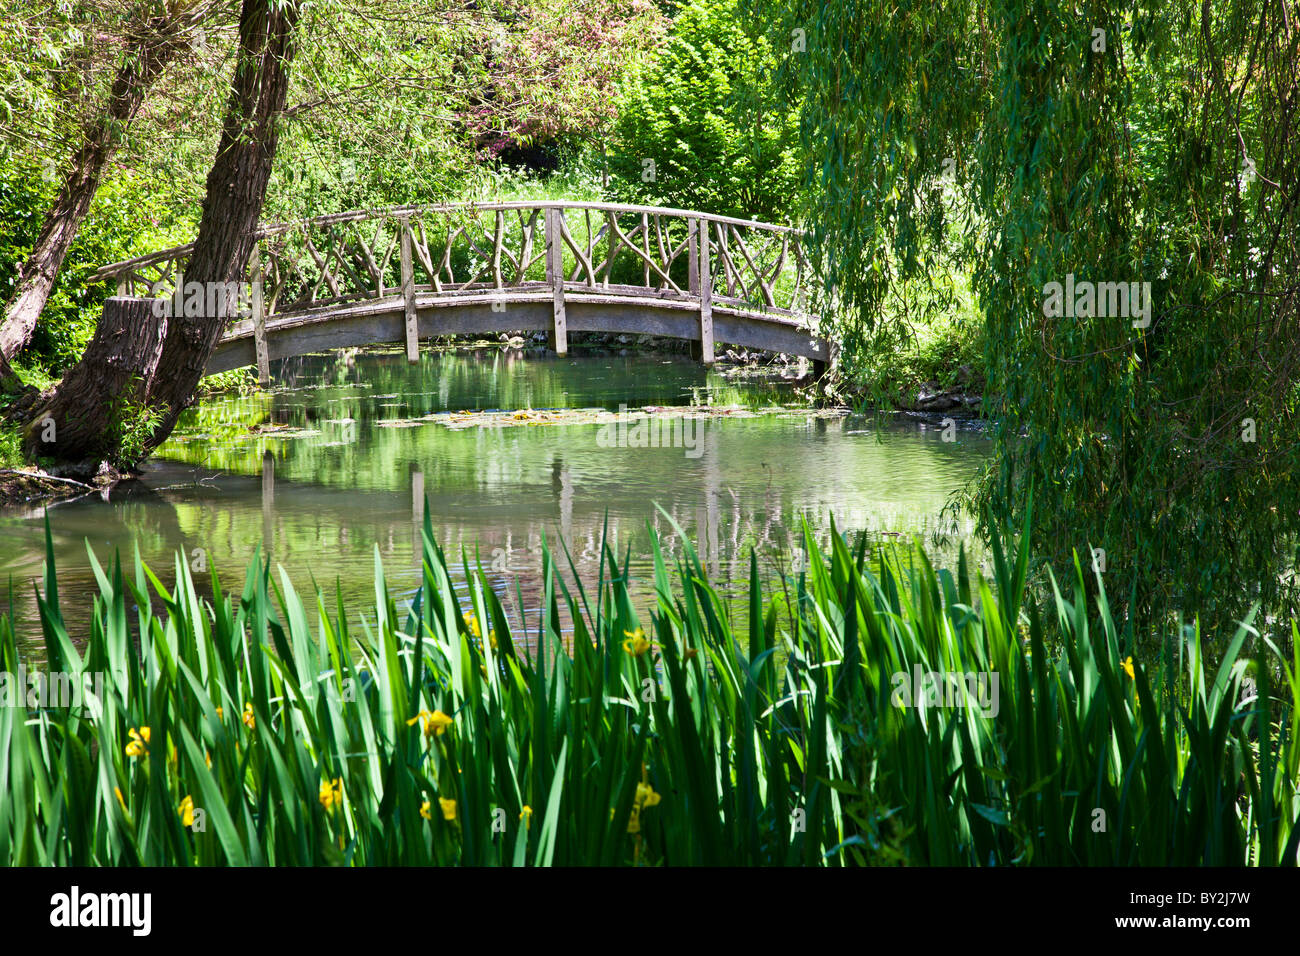 Ein großer Zierteich oder kleiner See mit einer ziemlich rustikal Holzbrücke in einem englischen Landhaus-Garten im Sommer Stockfoto